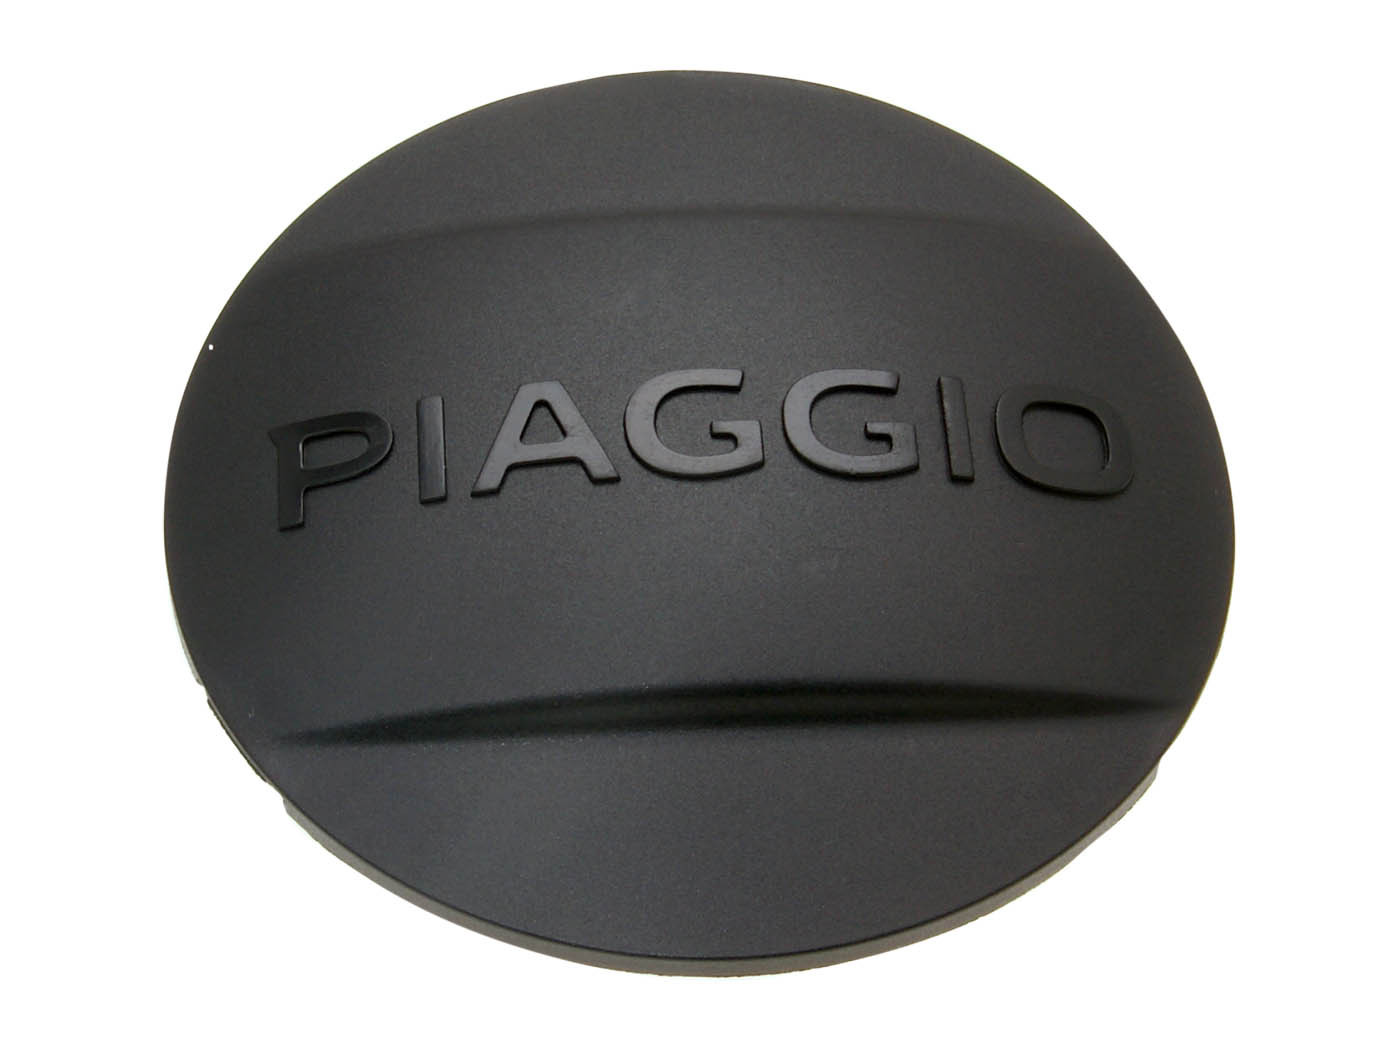 OEM fekete "PIAGGIO" variátorfedél sapka - Aprilia, Gilera, Piaggio Leader, Quasar 125-300